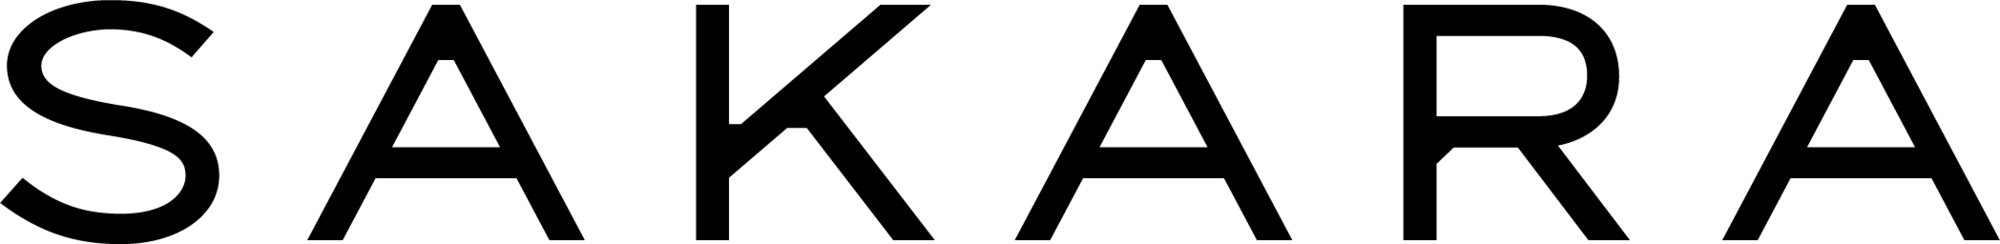 Sakara mobile logo